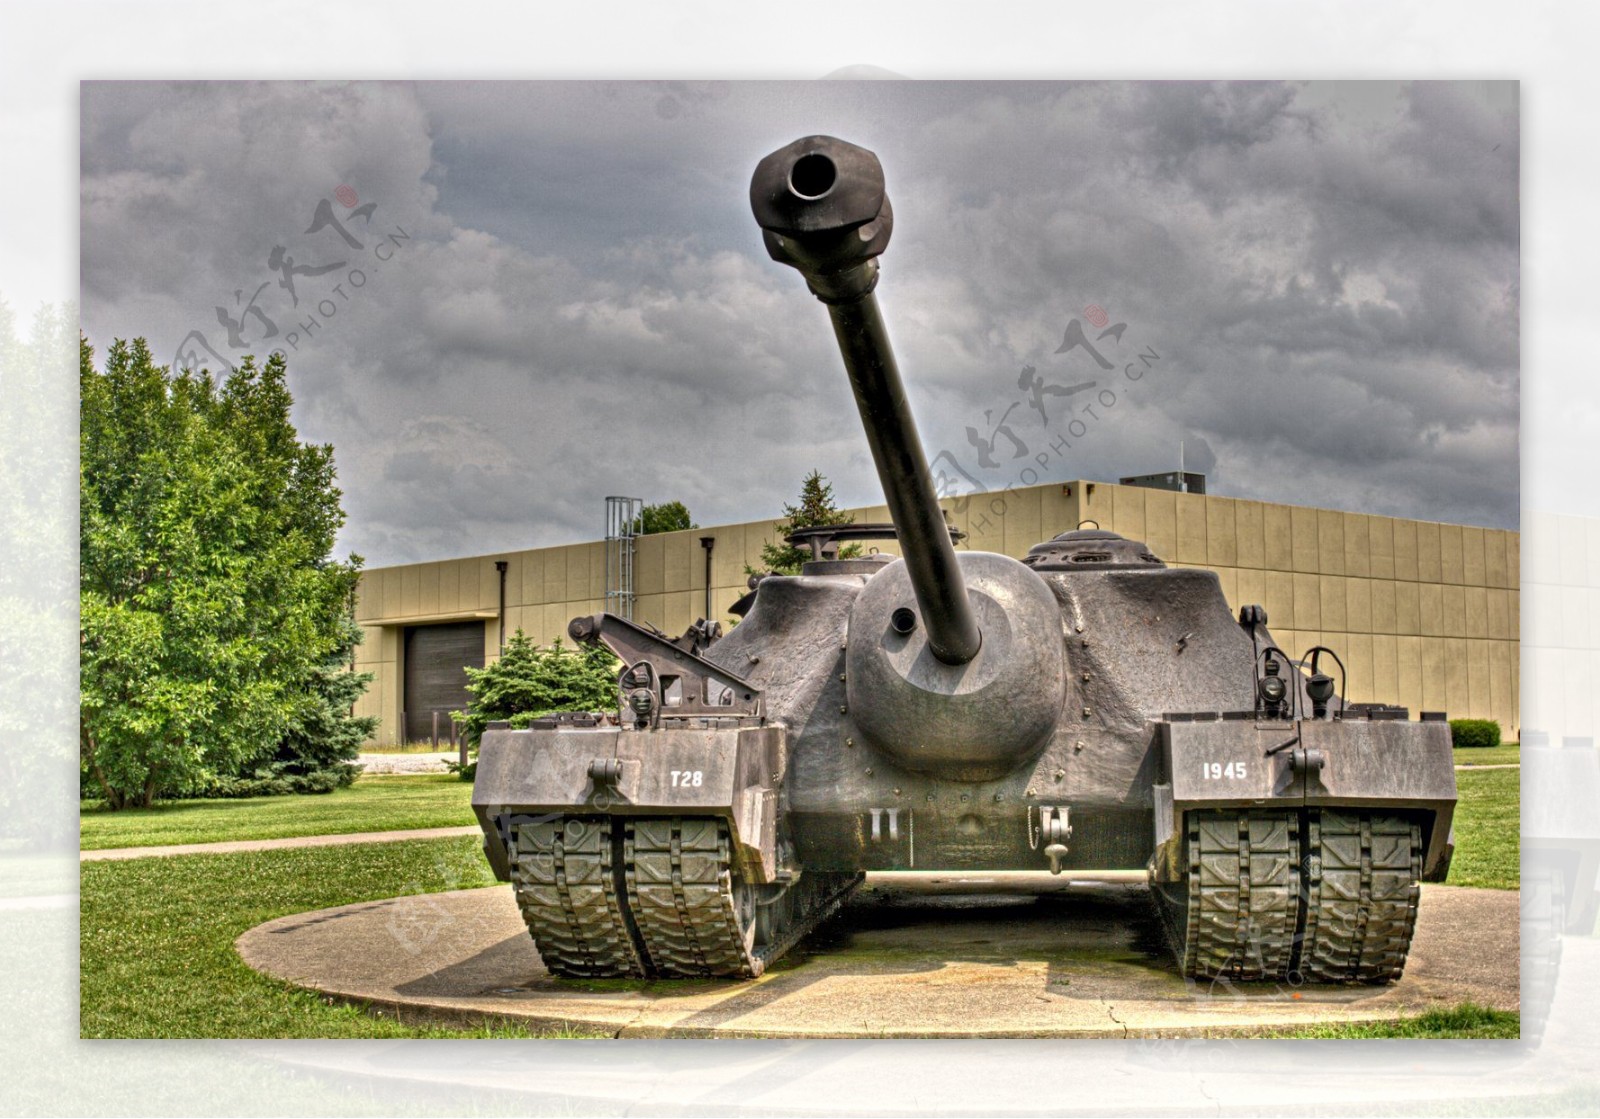 美国t28坦克图片